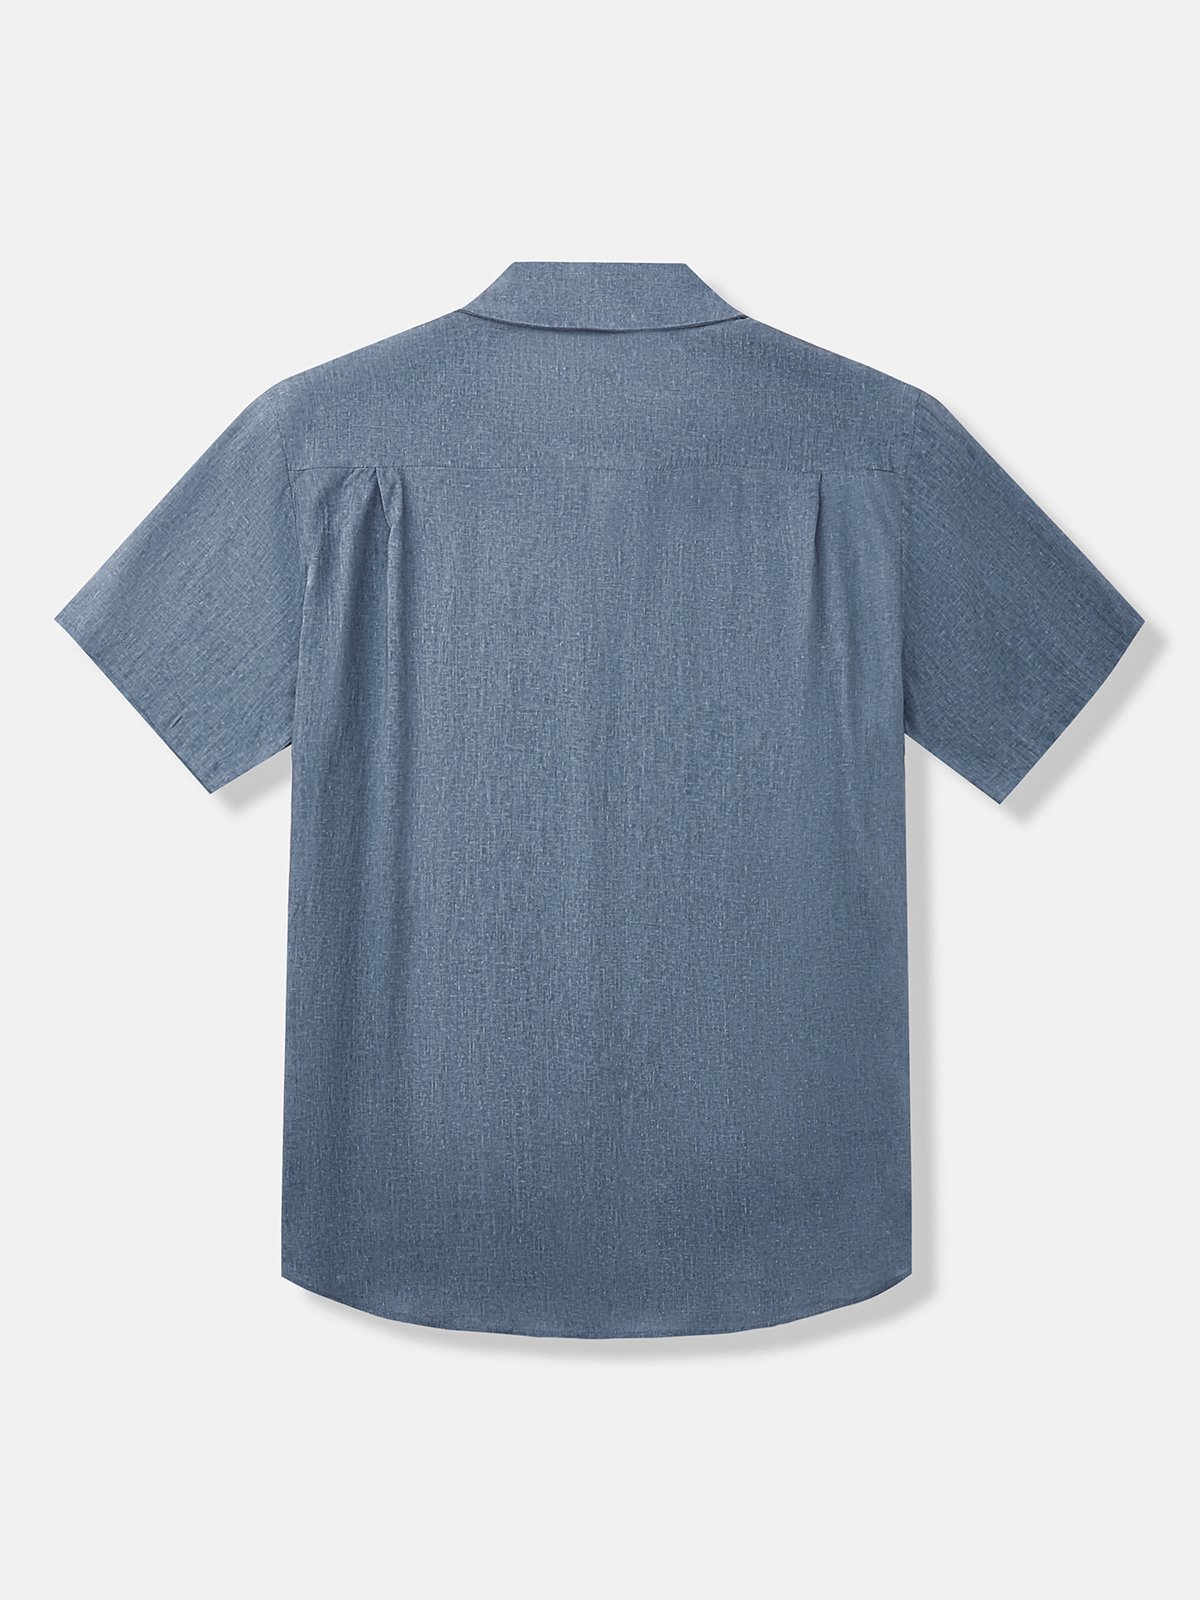 Hardaddy Linen-blend Classic Resort Shirt